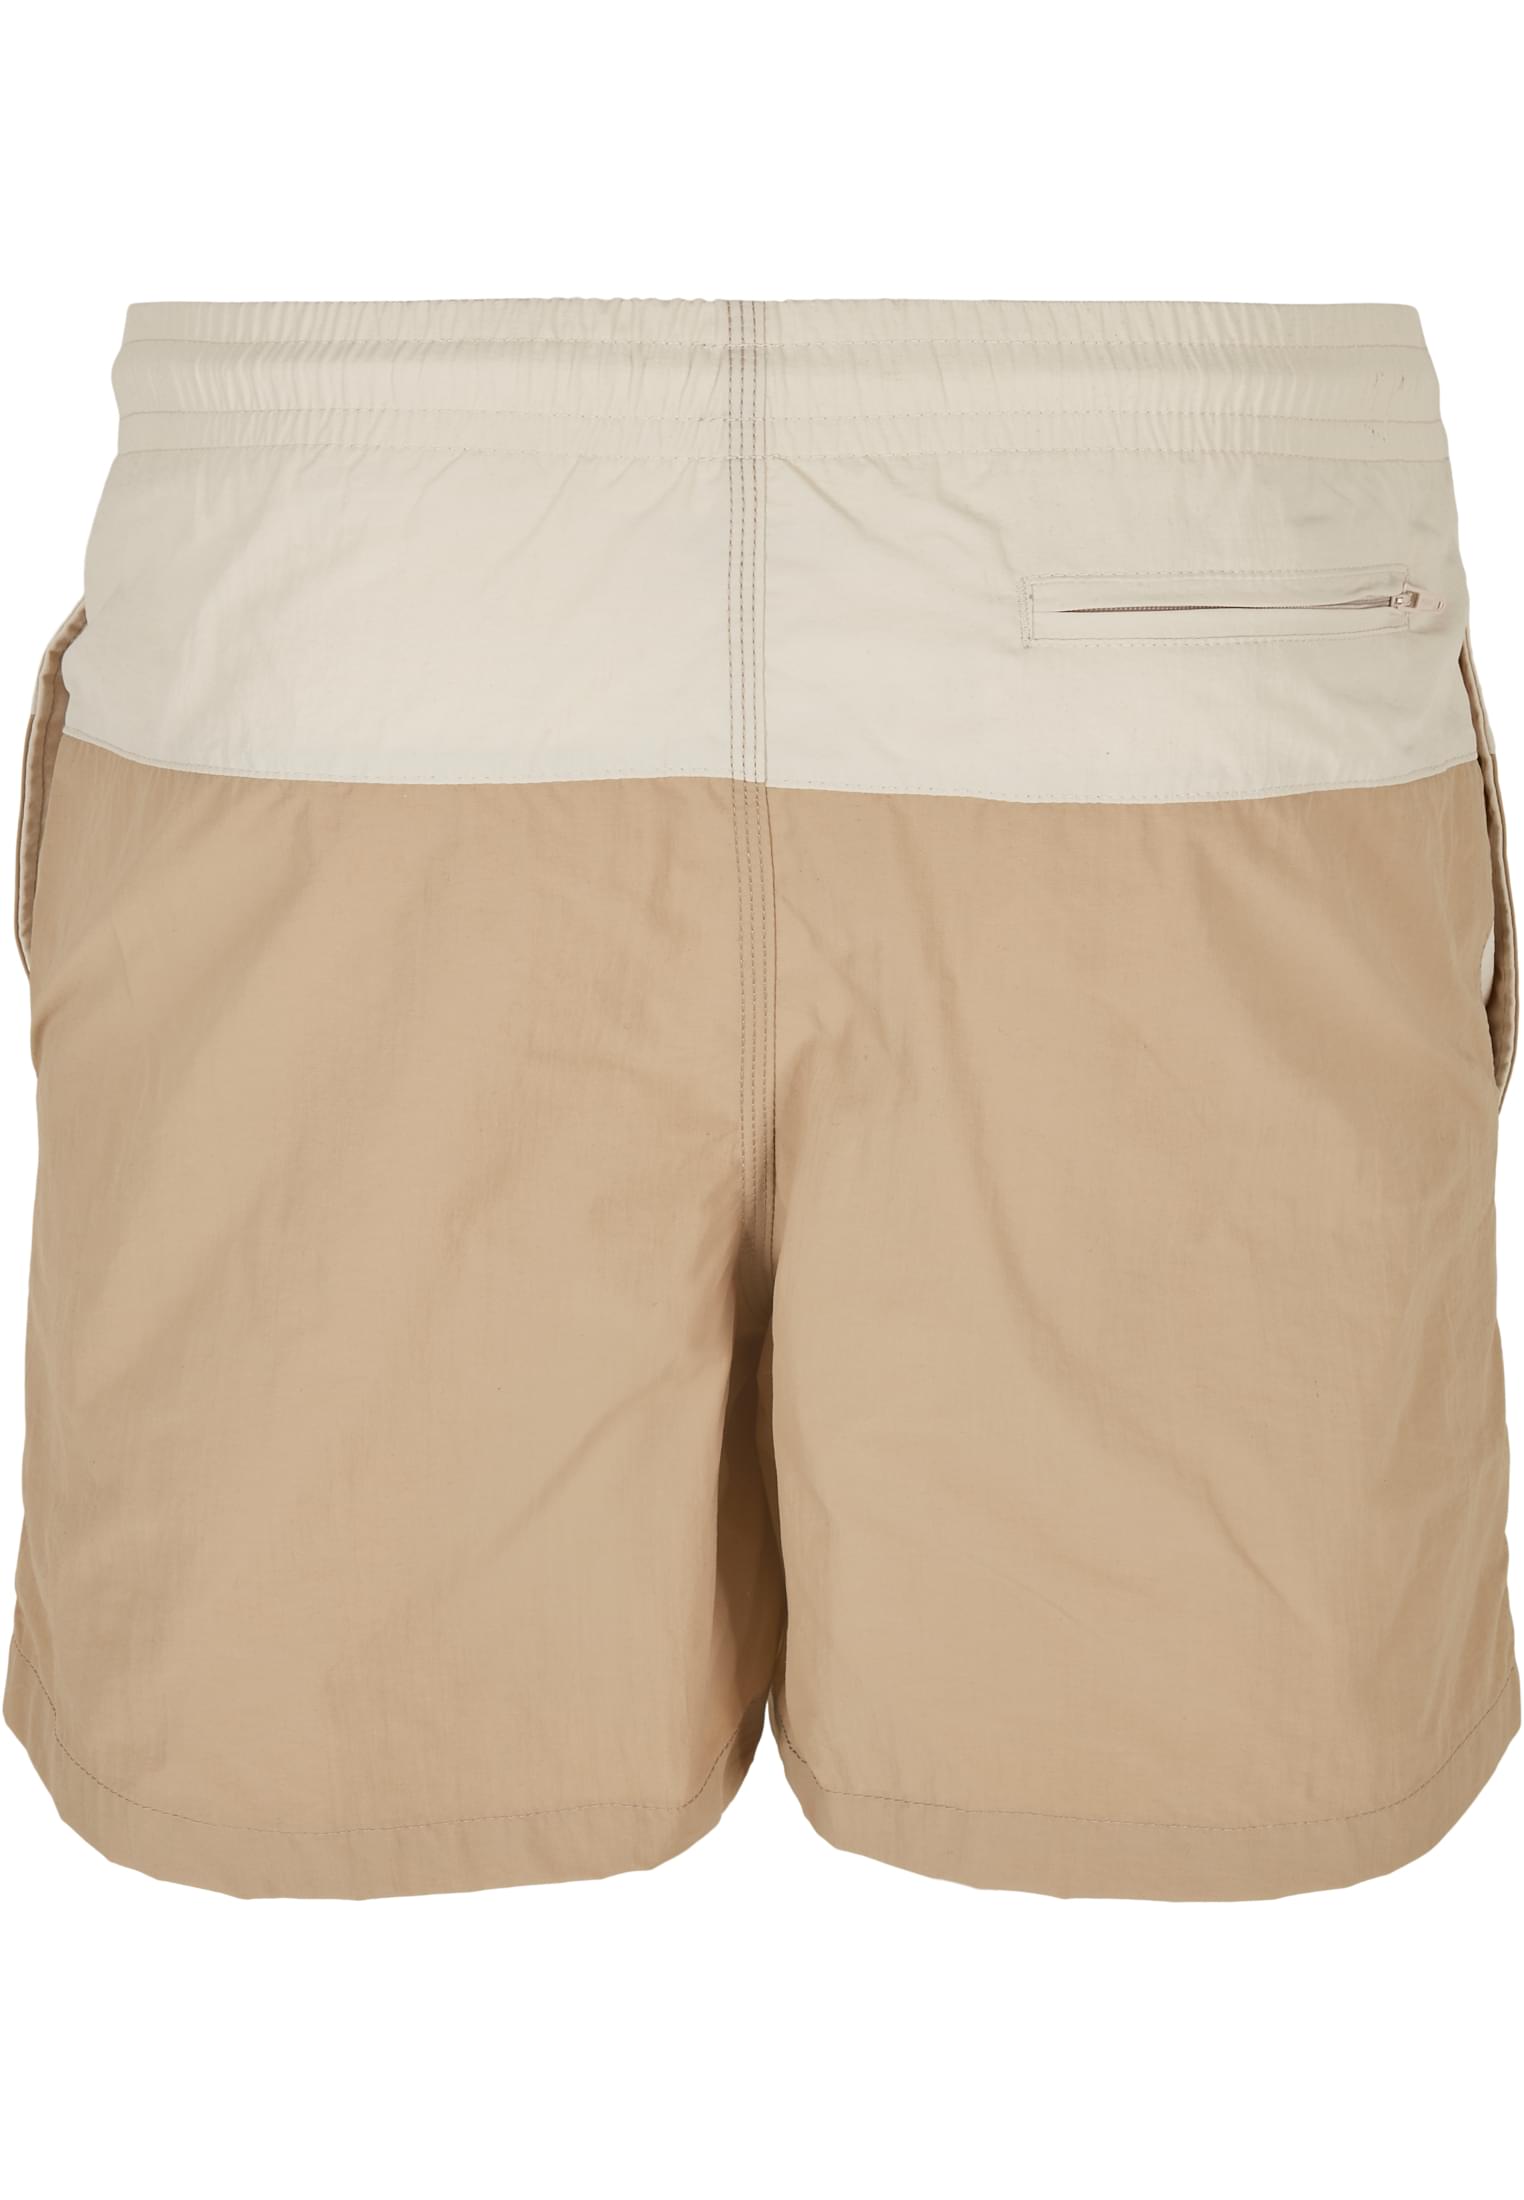 Plus Size Block Swim Shorts in Farbe unionbeige/softseagrass